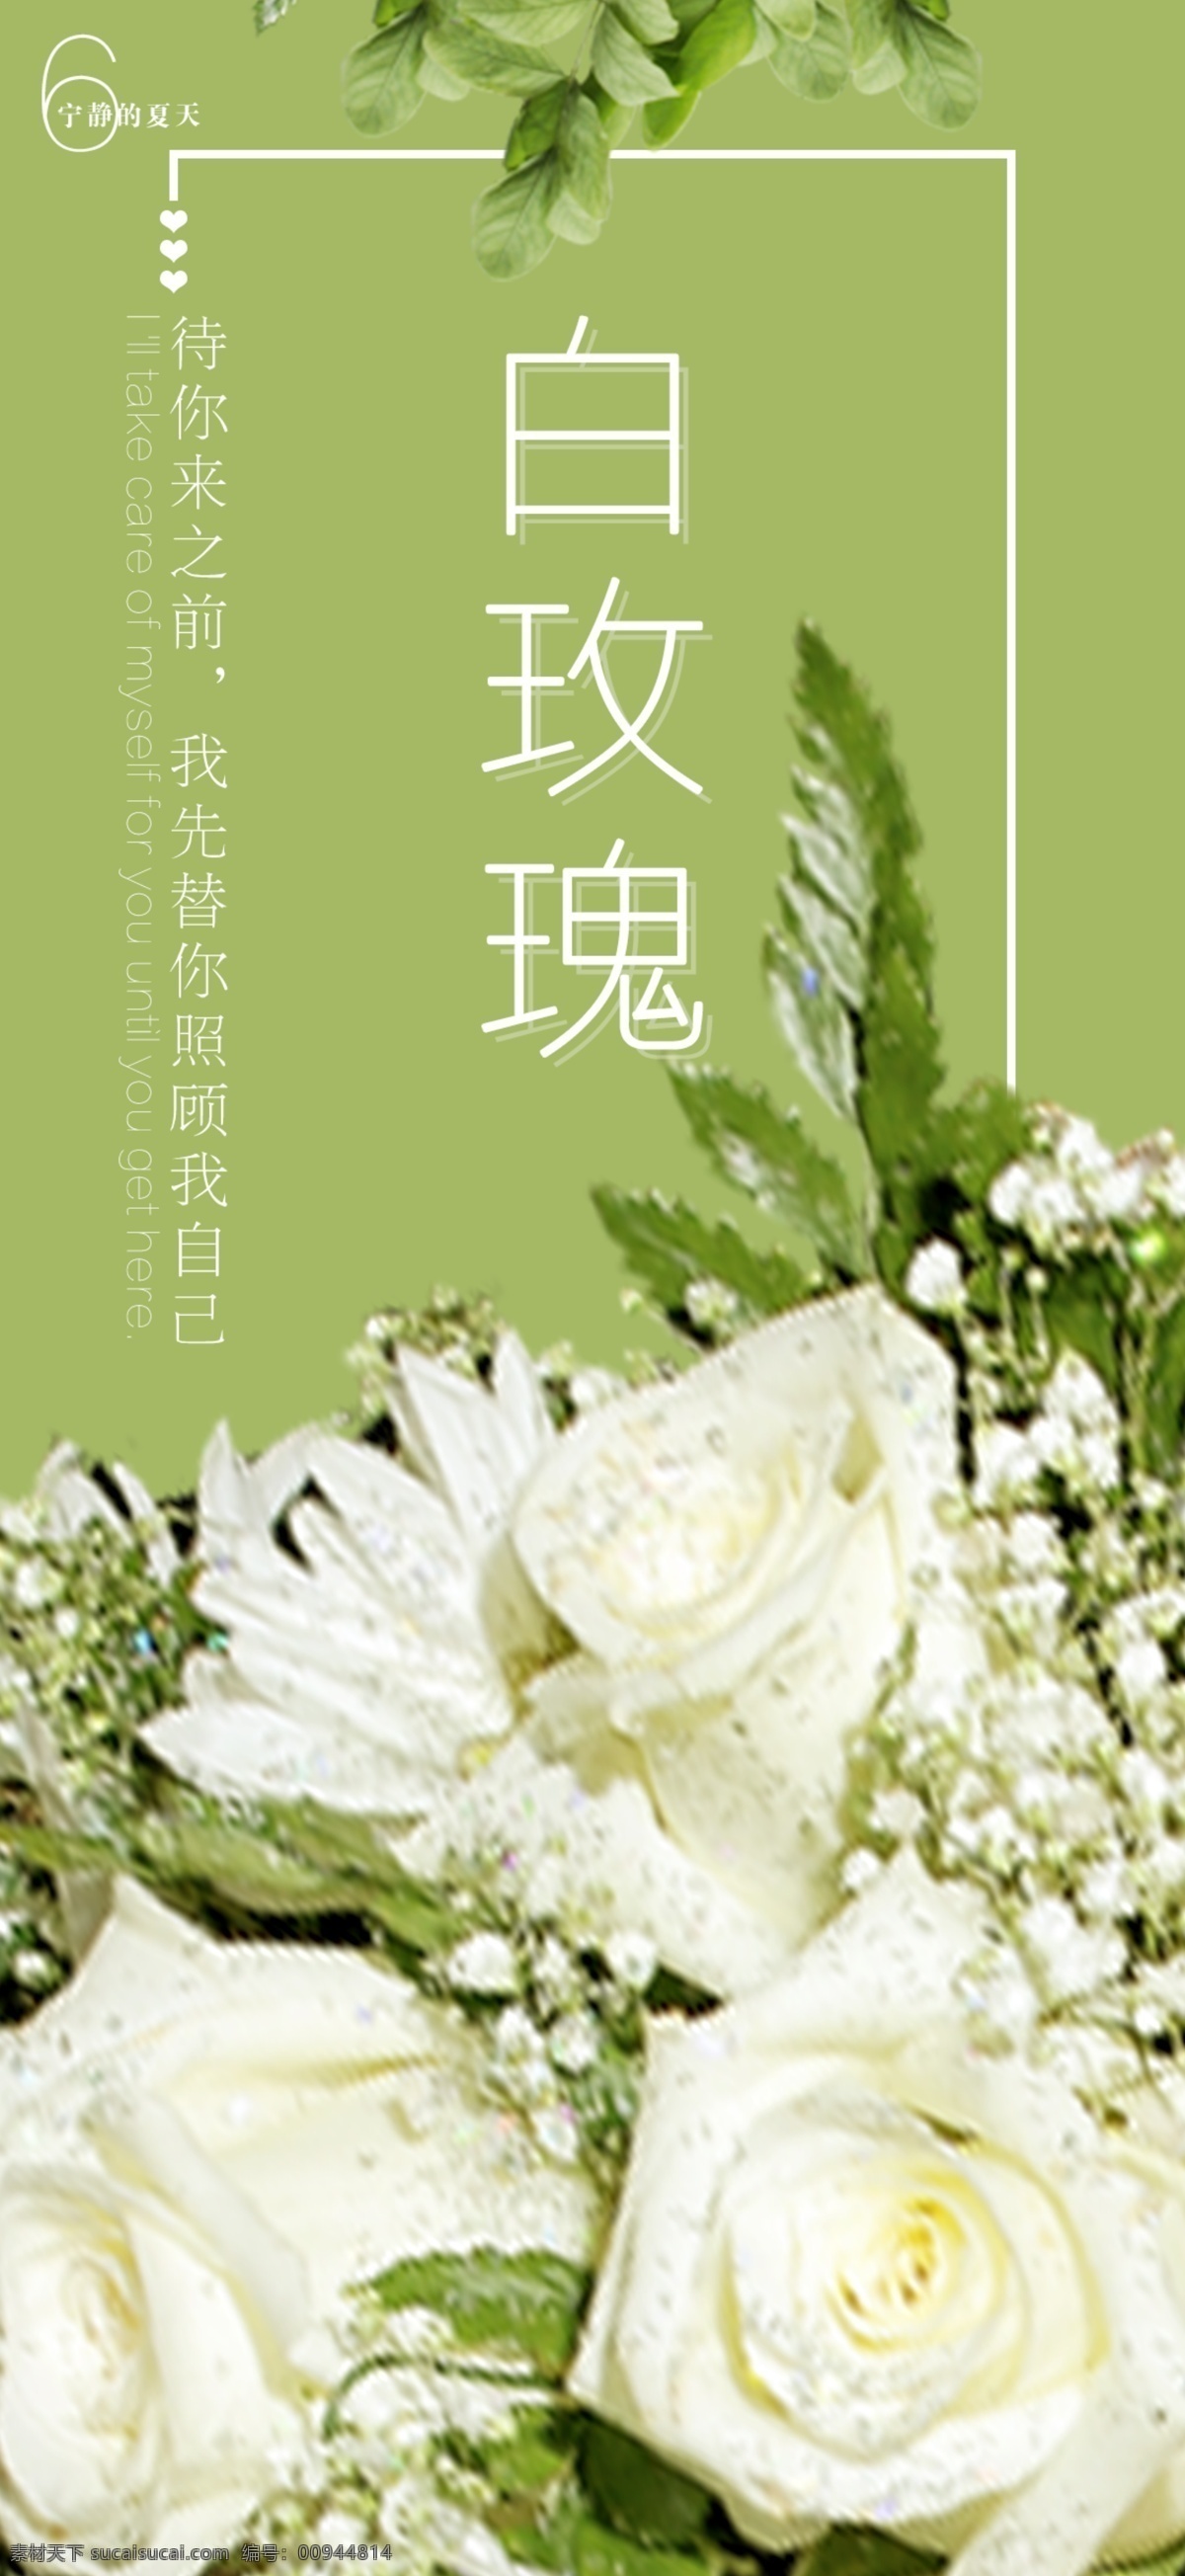 白 玫瑰 手机 海报 竖版 白玫瑰 爱情 情景 绿色 自然 甜蜜